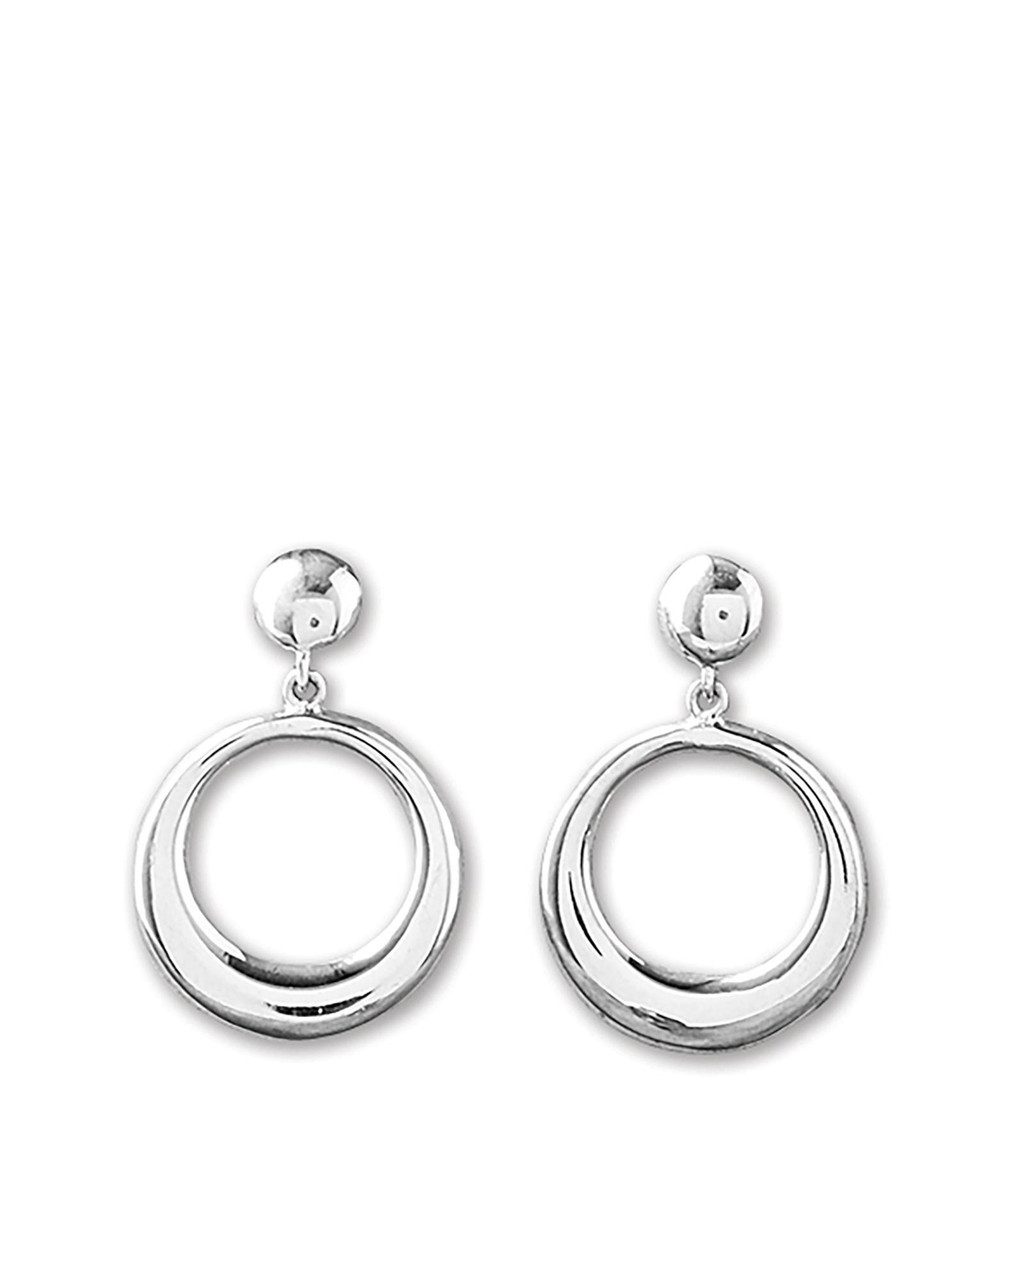 Oxidised silver earrings / earrings small Oxidised jwellery Pack of 4